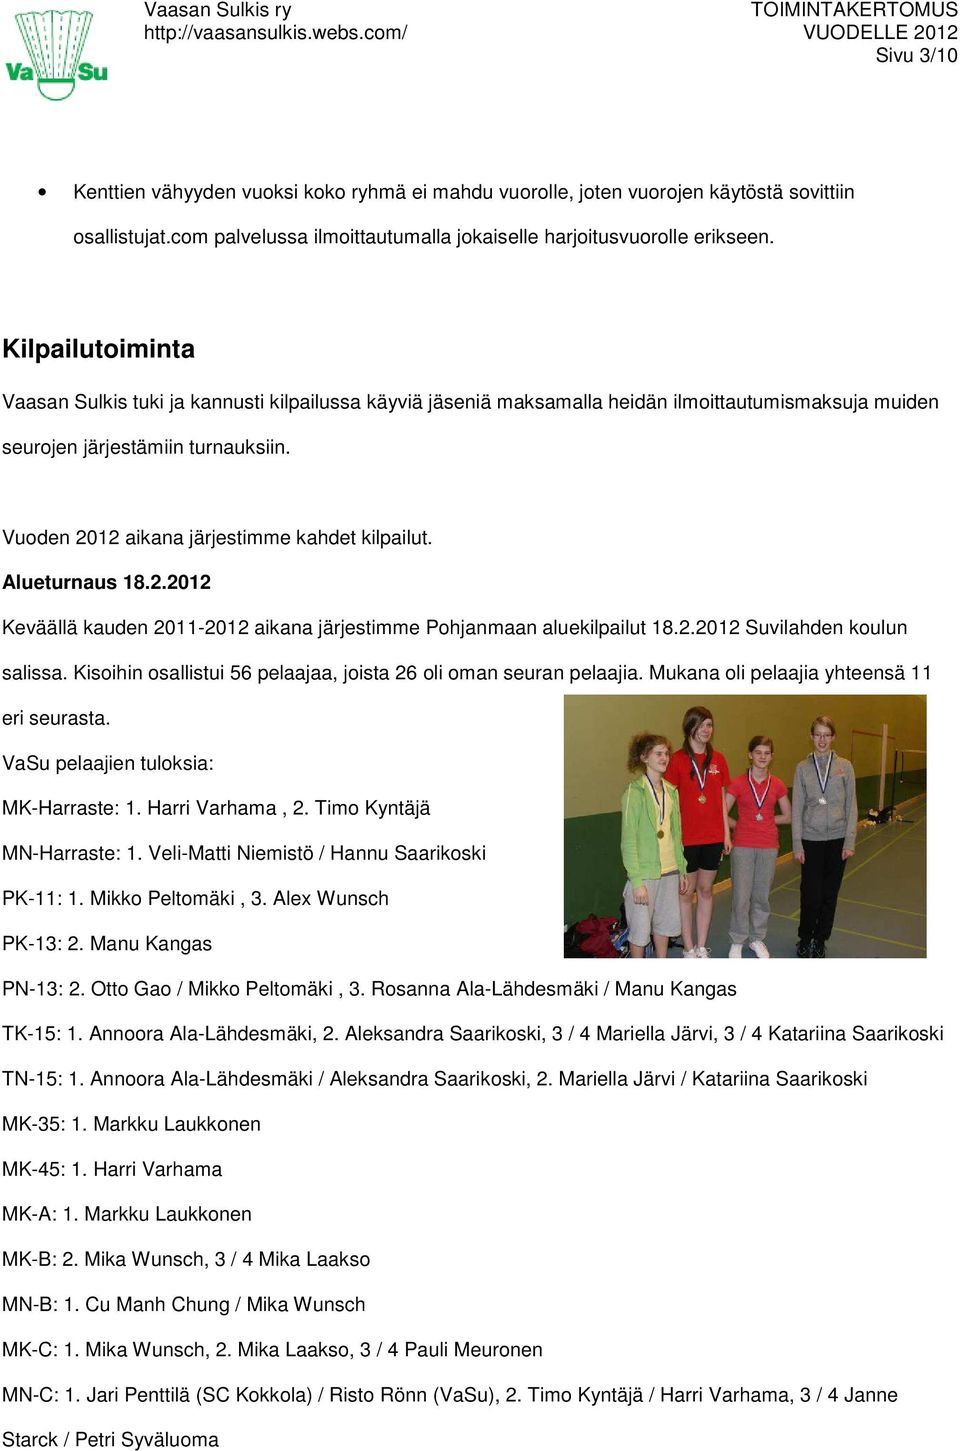 Vuoden 2012 aikana järjestimme kahdet kilpailut. Alueturnaus 18.2.2012 Keväällä kauden 2011-2012 aikana järjestimme Pohjanmaan aluekilpailut 18.2.2012 Suvilahden koulun salissa.